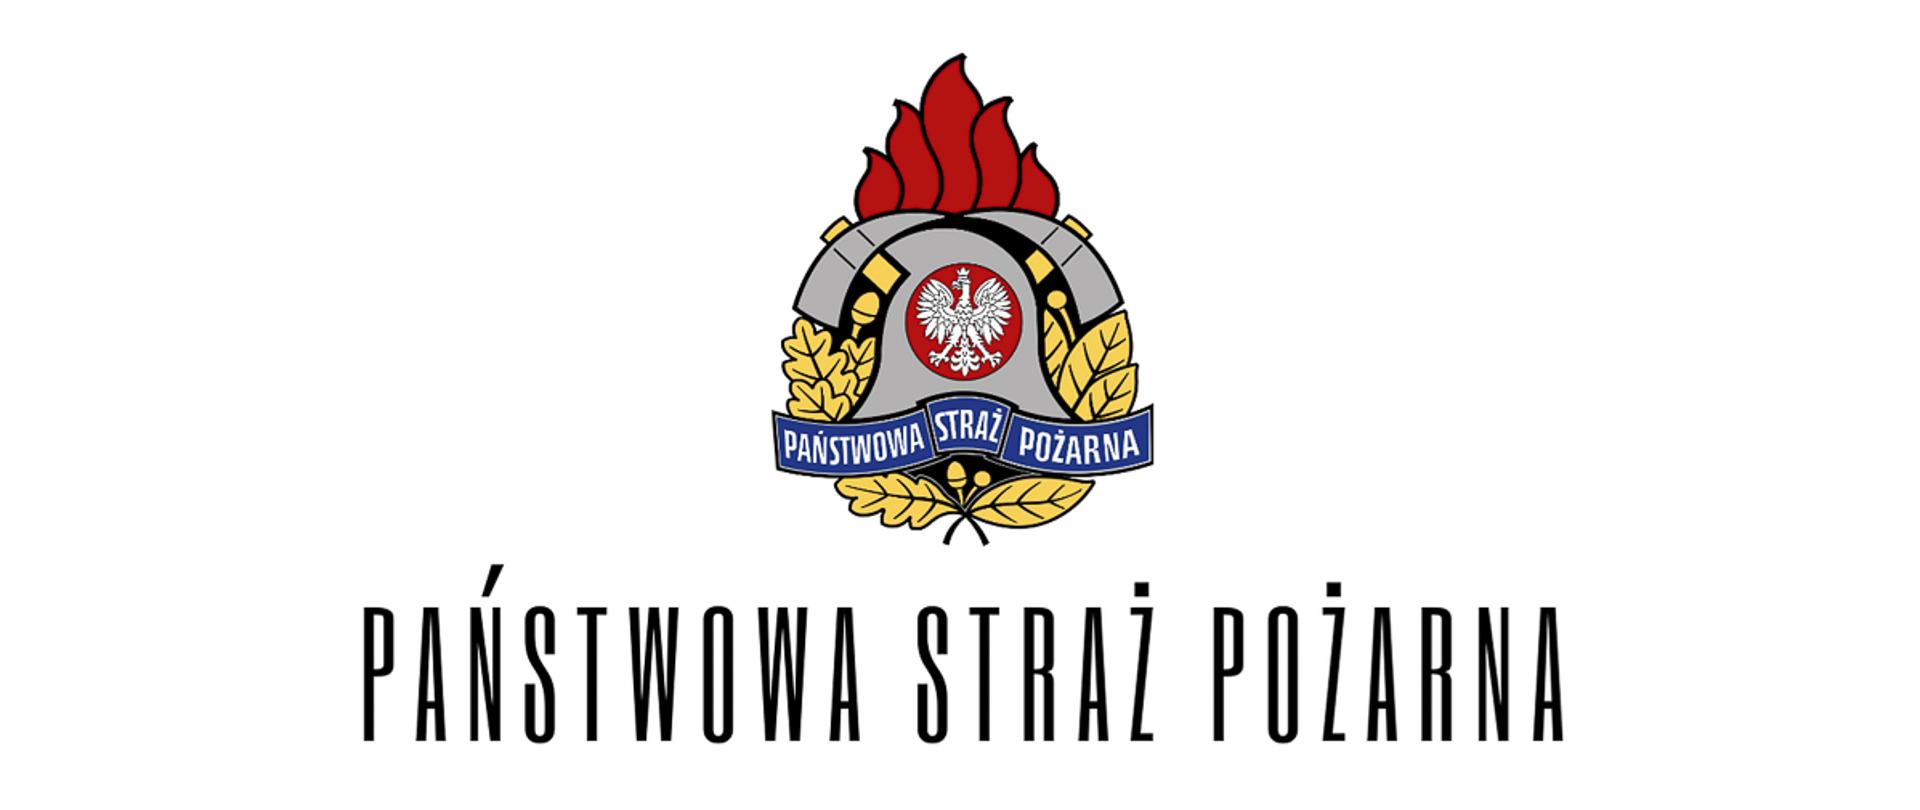 zdjęcie przedstawia logo państwowej straży pożarnej